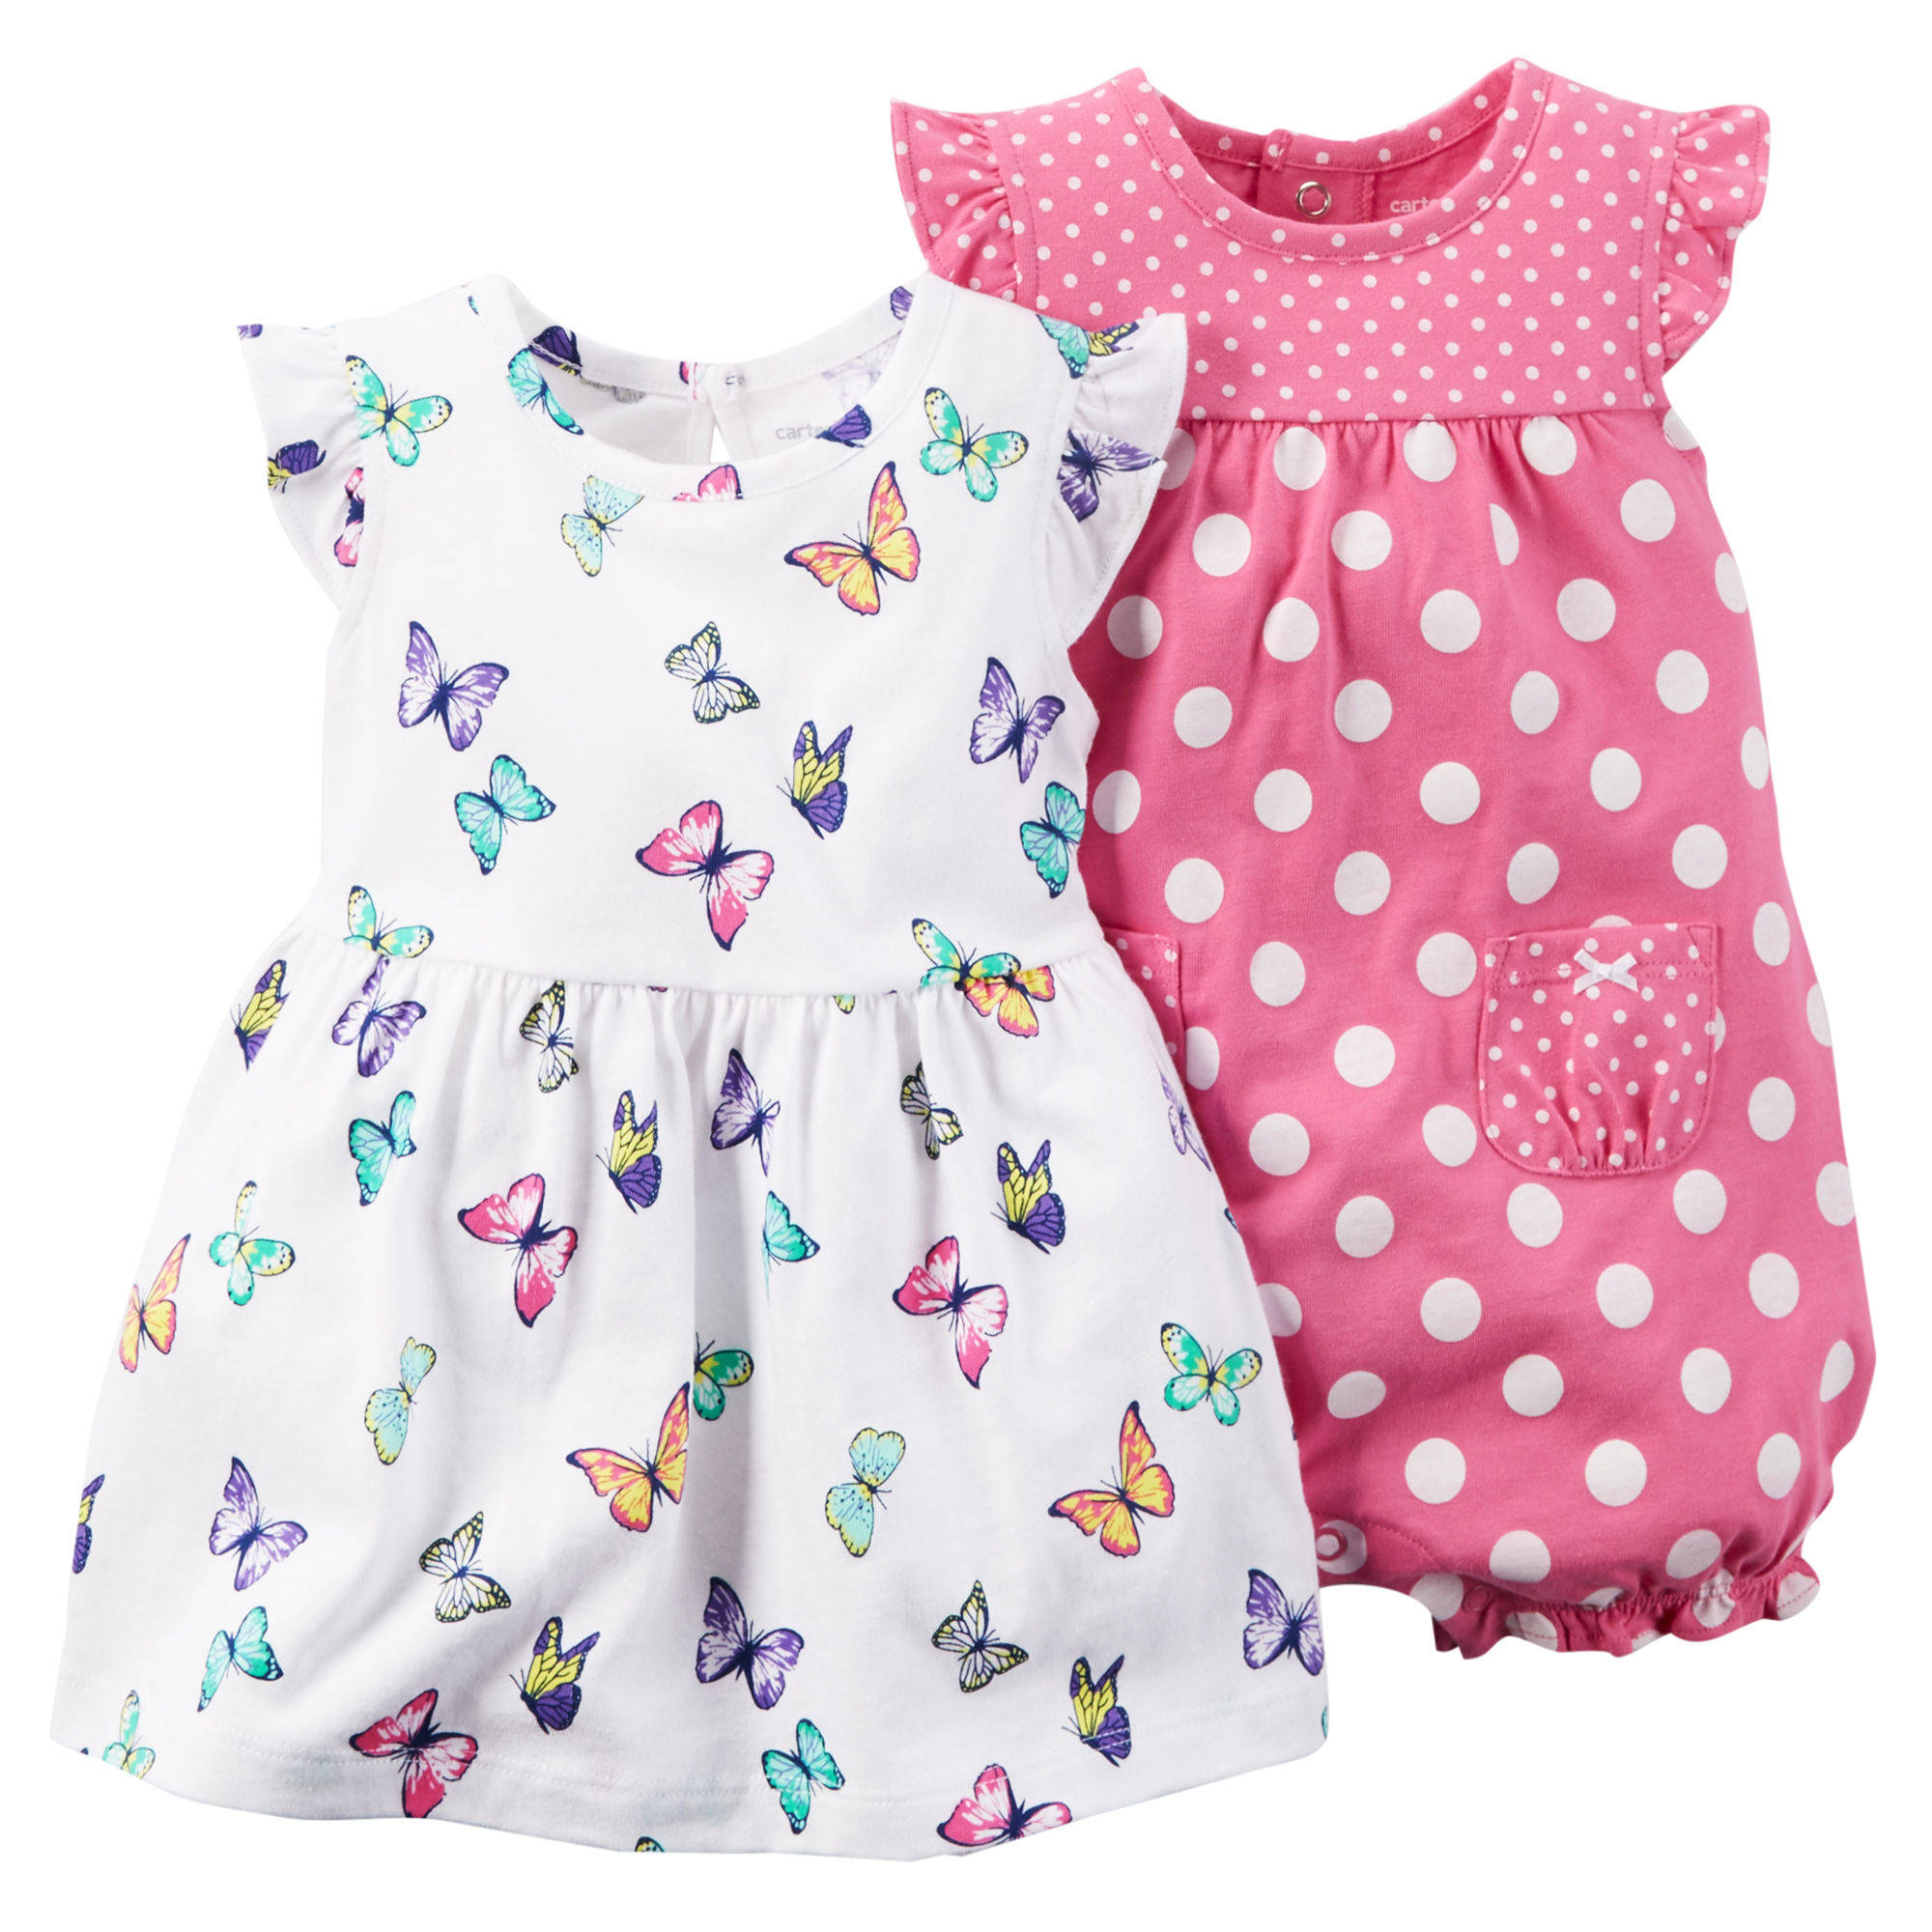 Платье для девочки 6 месяцев. Ромпер Картерс для девочки. Песочник Картерс розовый с бабочками. Carters 24 комплект. Детская одежда для малышей.